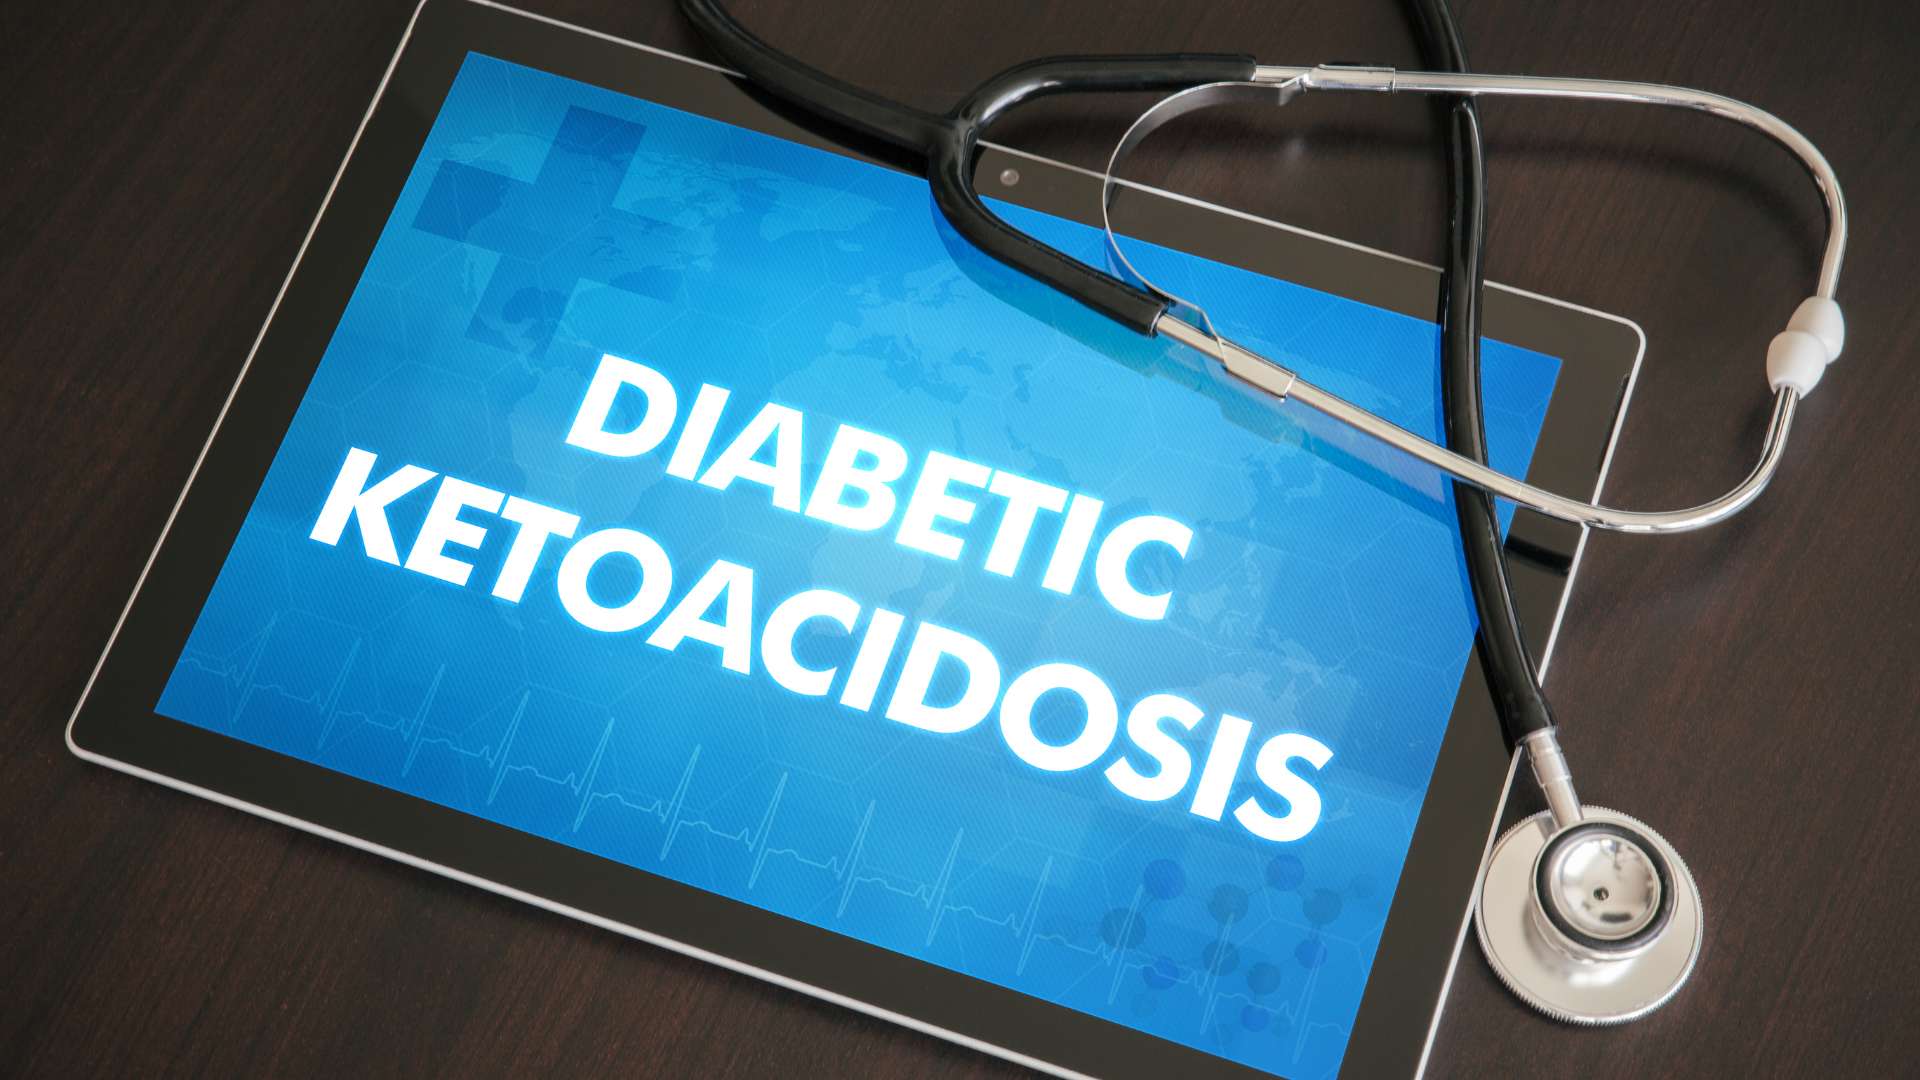 What is diabetic ketoacidosis?